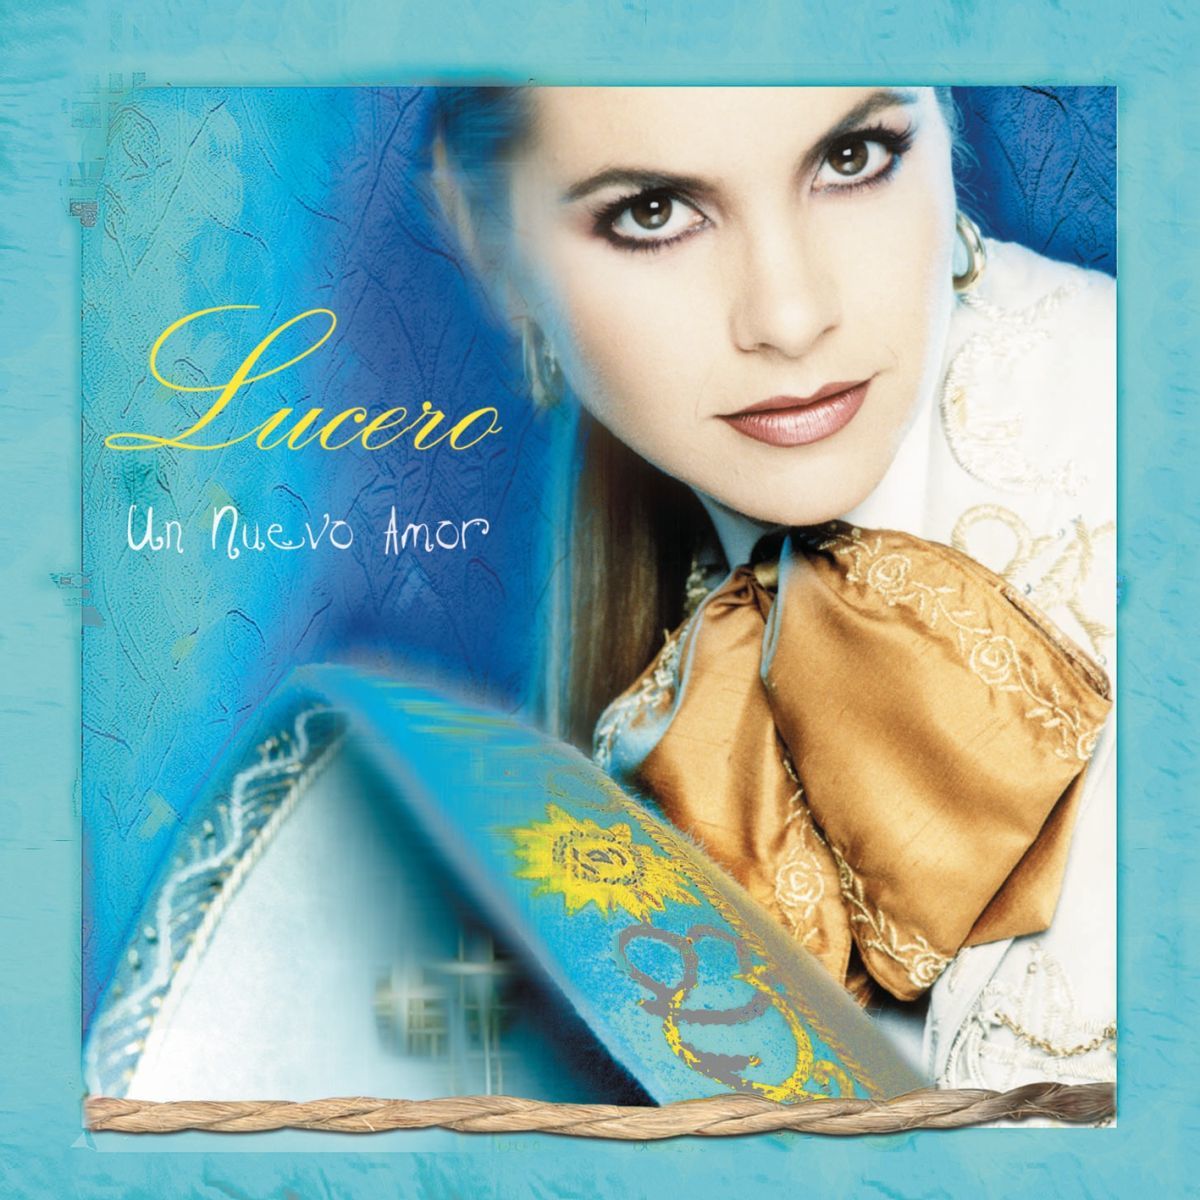 Cd Lucero- Un nuevo amor Cover